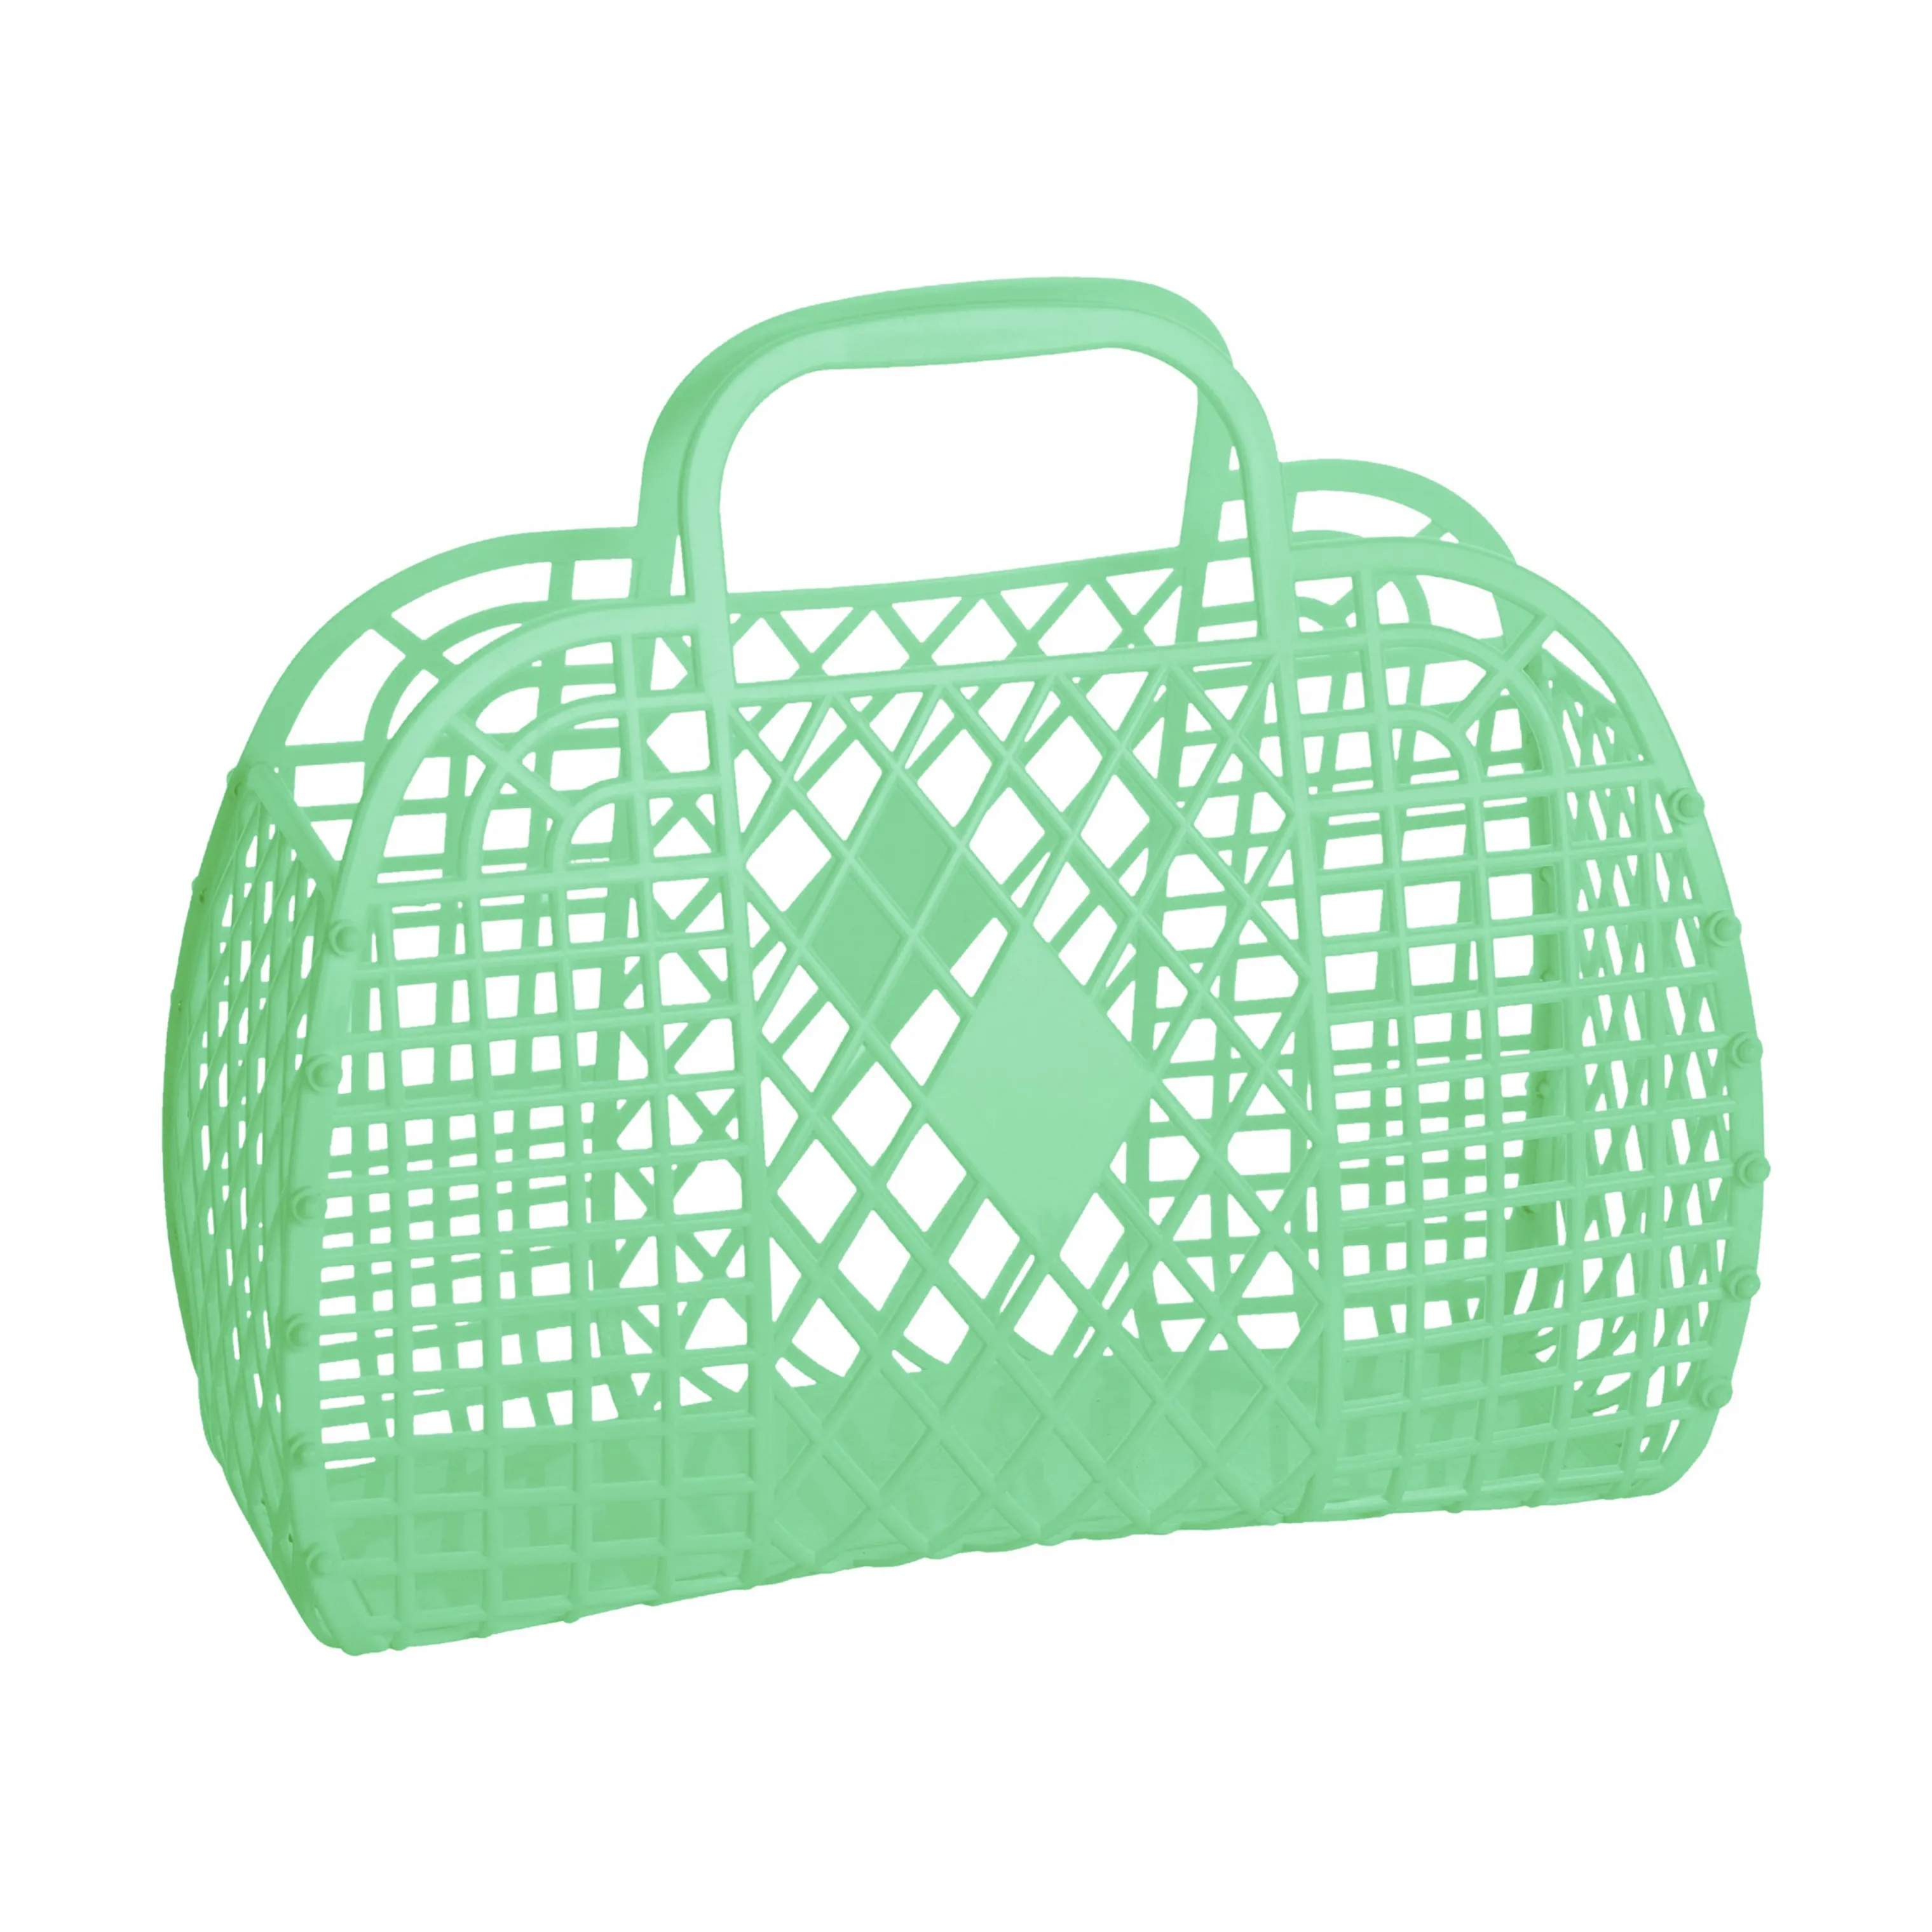 Retro Basket, green, large